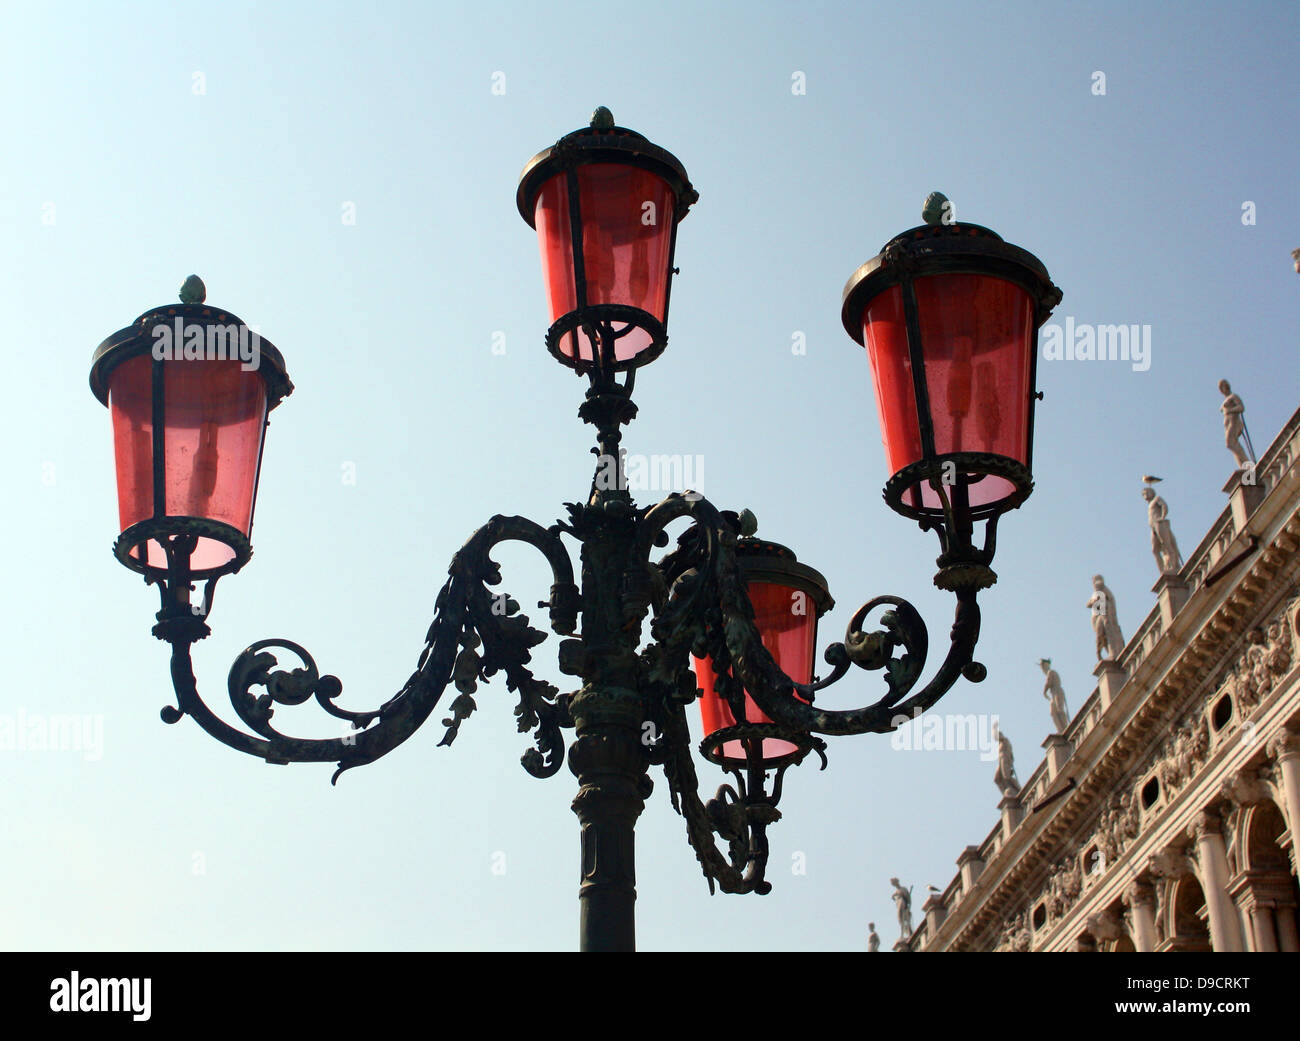 Risparmio energetico eco-friendly l'illuminazione su un lampione nella piazzetta di San Marco, Venezia. Foto Stock